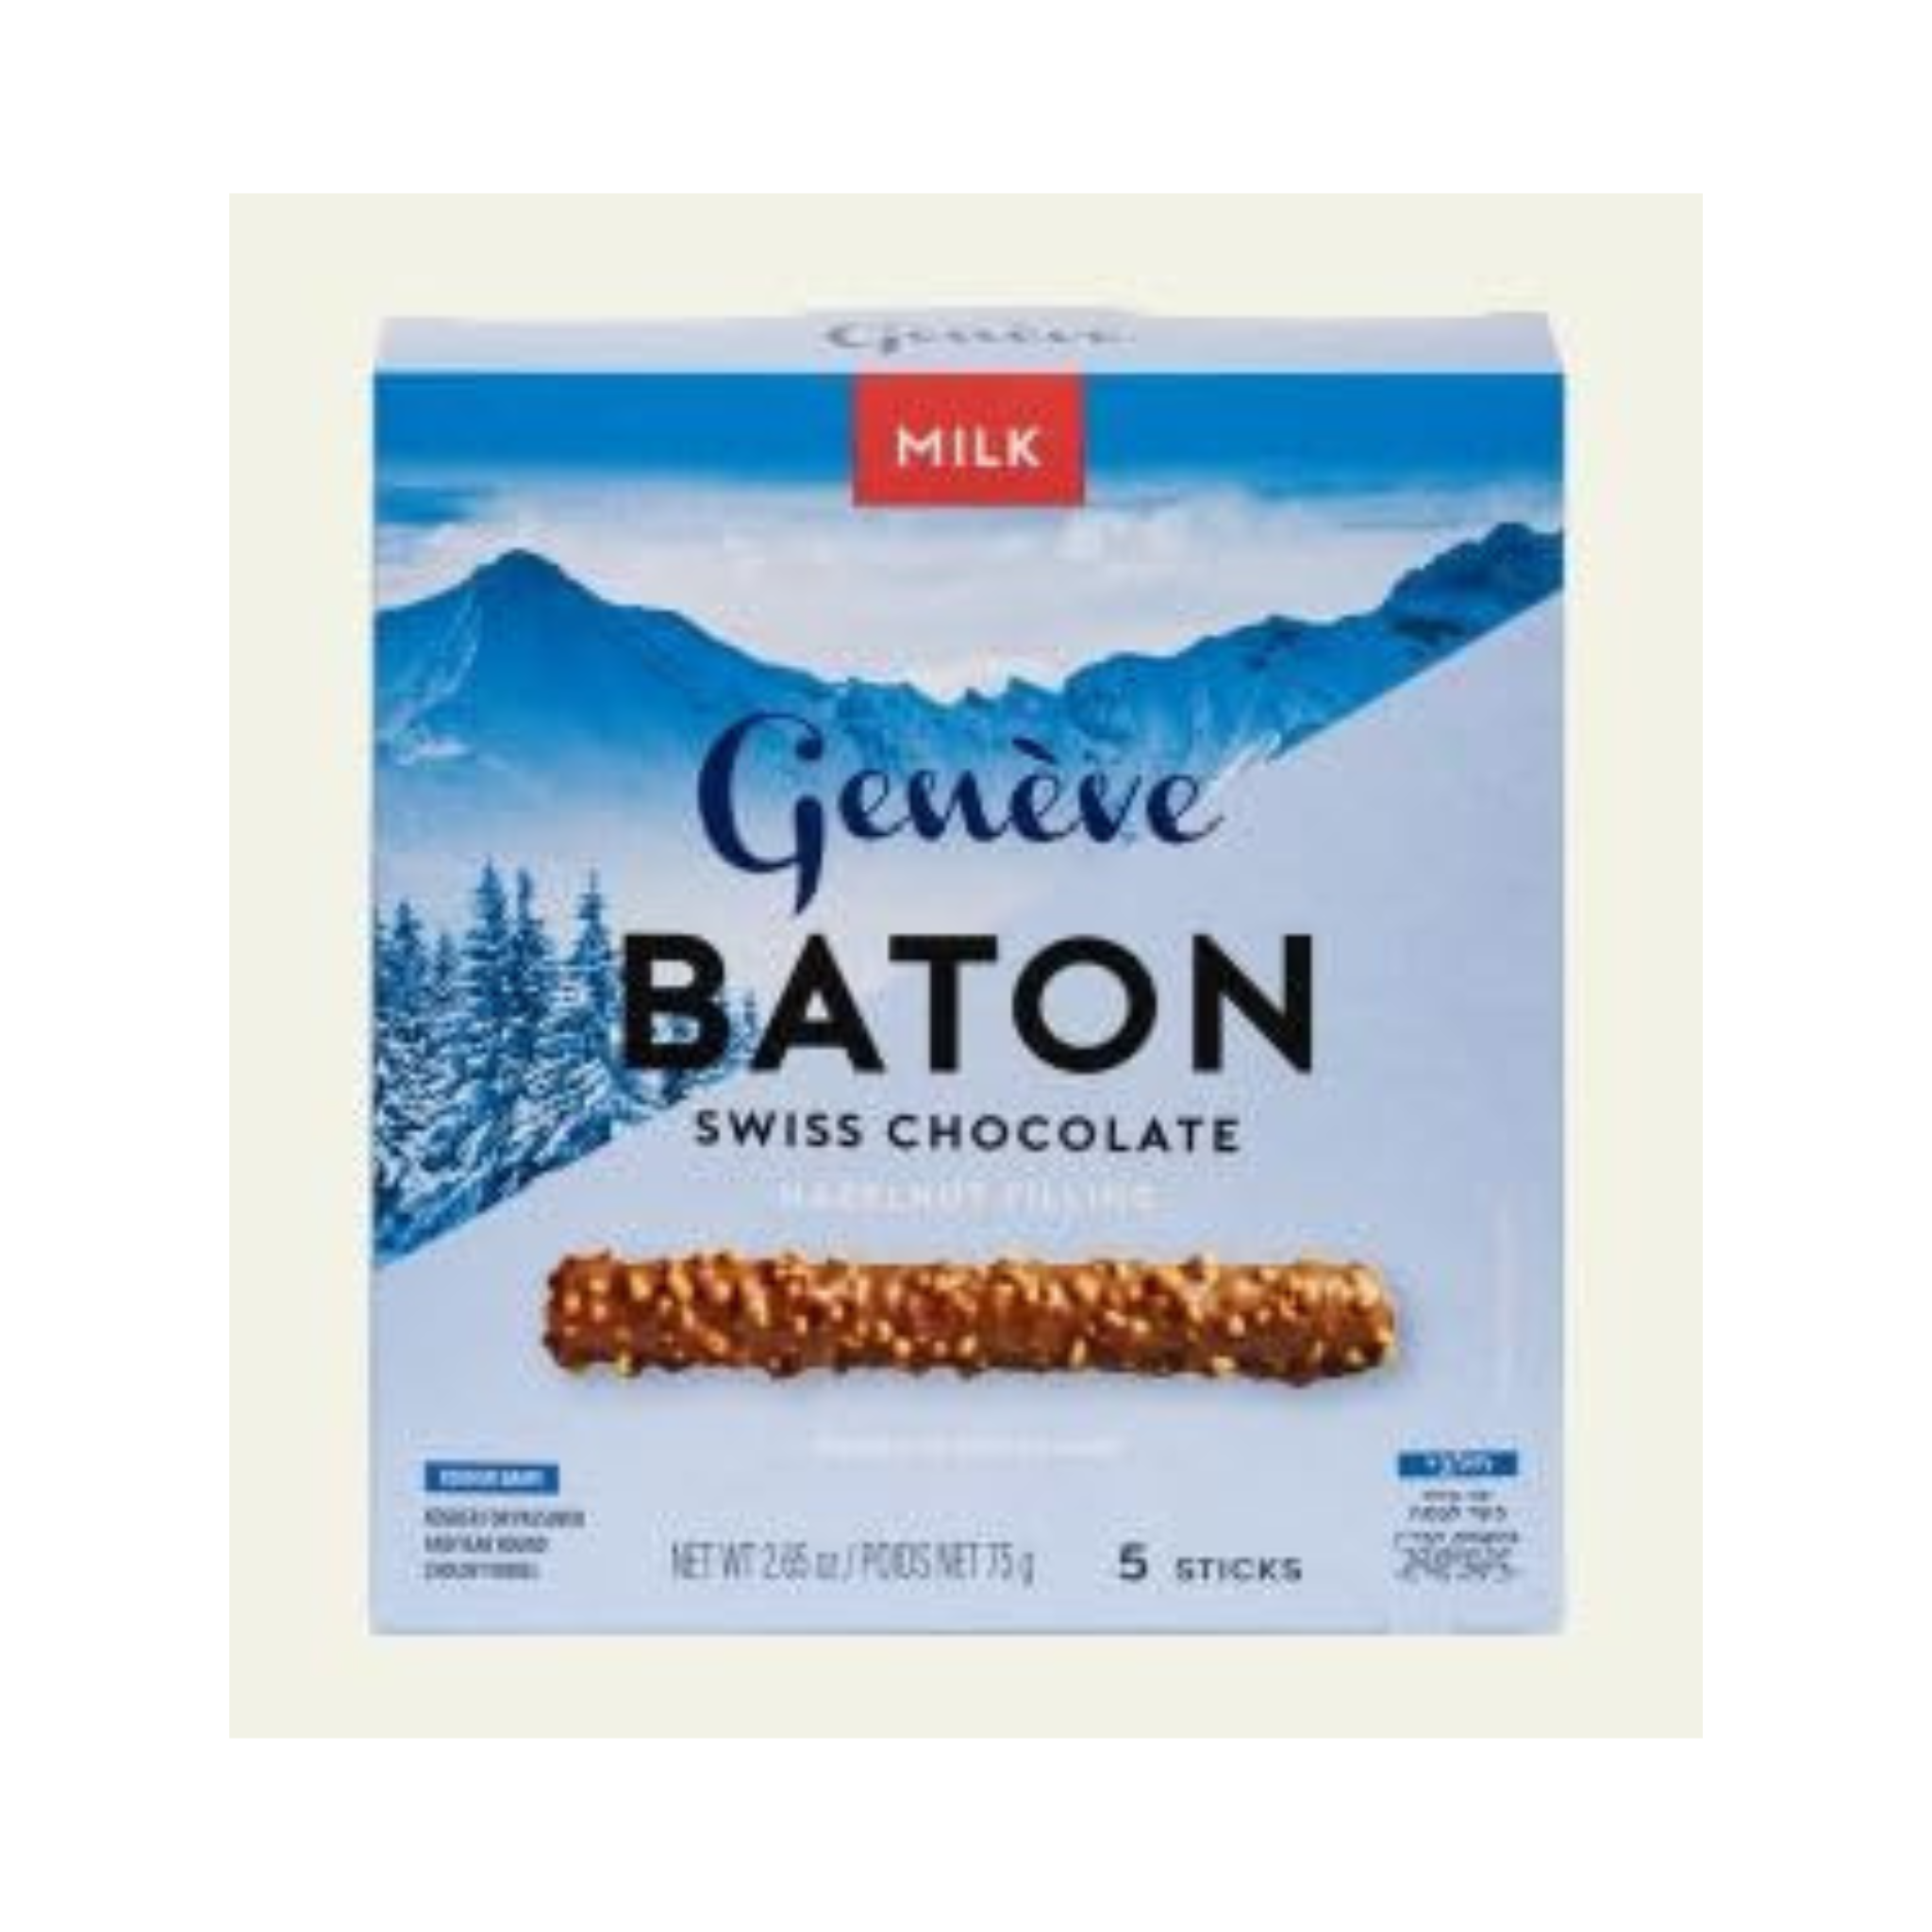 Geneve Baton Swiss Chocolate, Badatz, 2 Pack